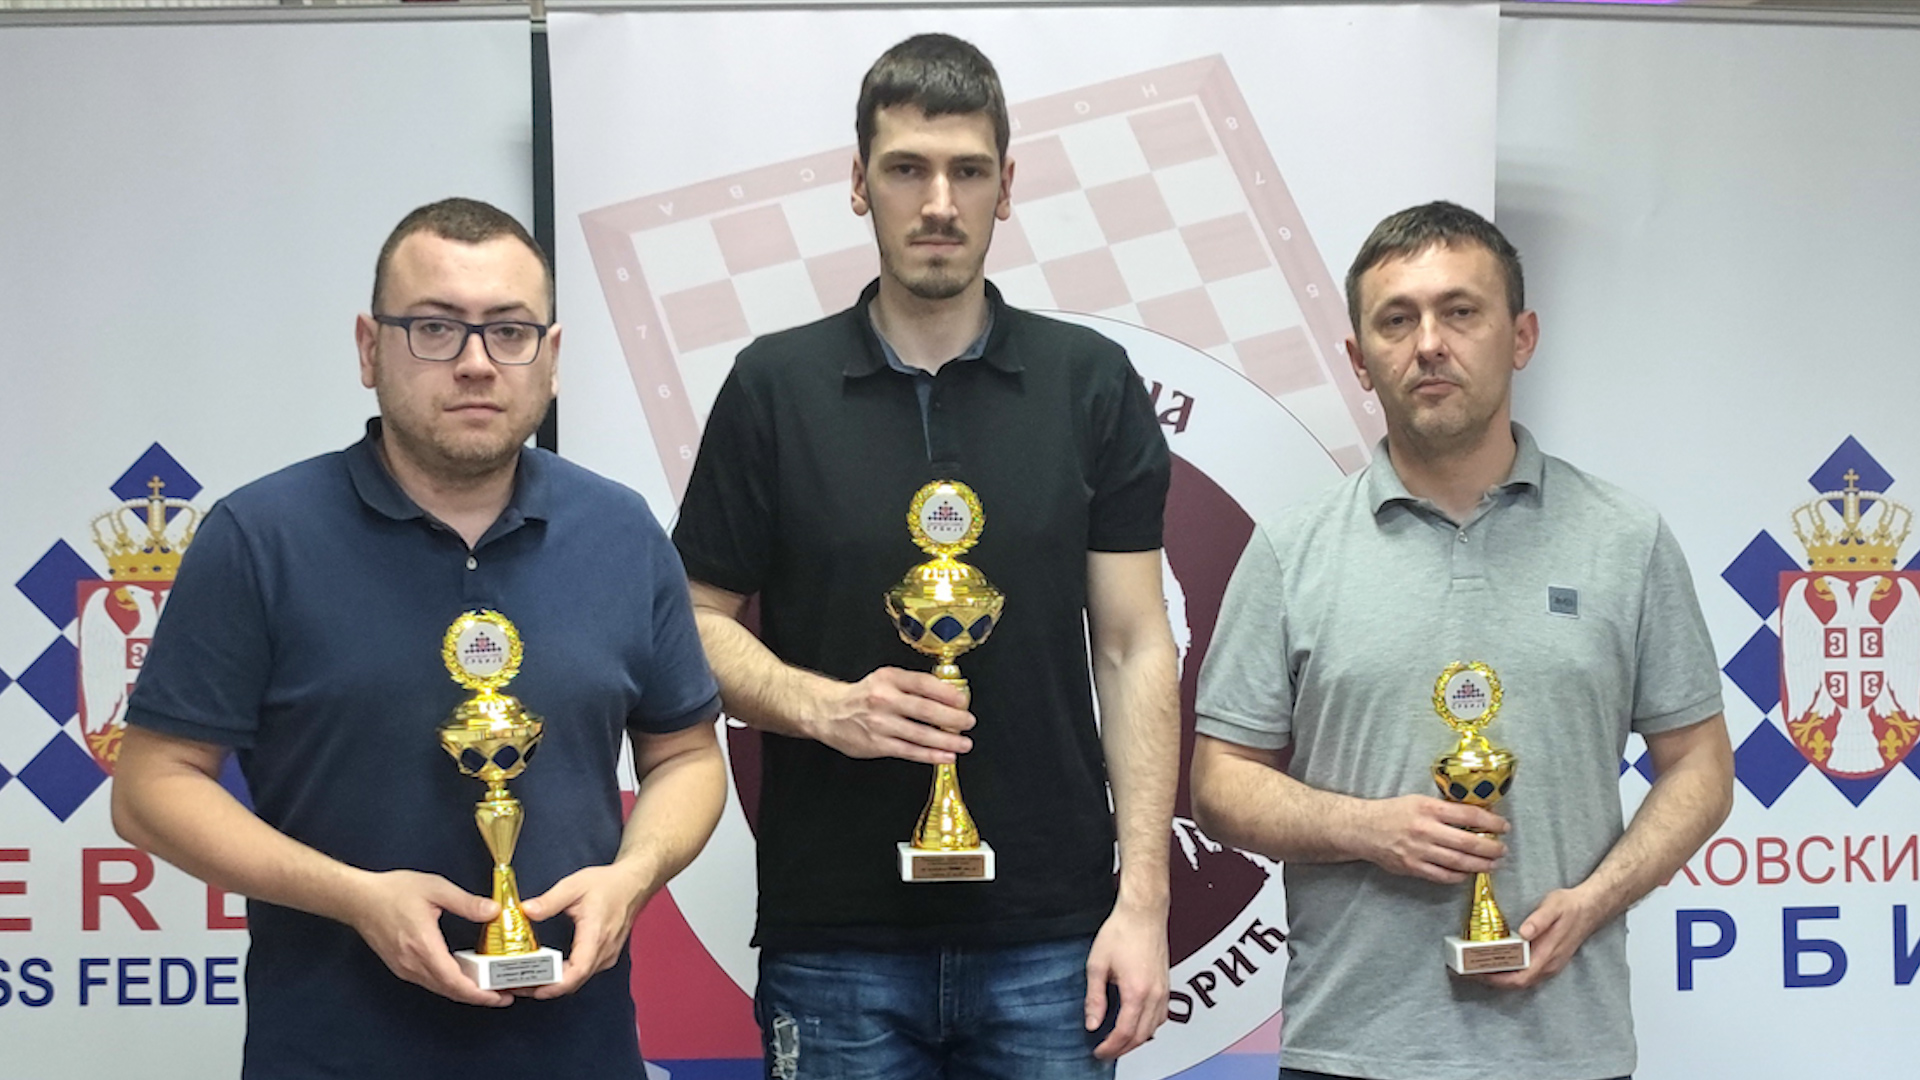 Završen 2. Festival Šahovskog saveza Srbije na bazenima Prestiž u Paraćinu